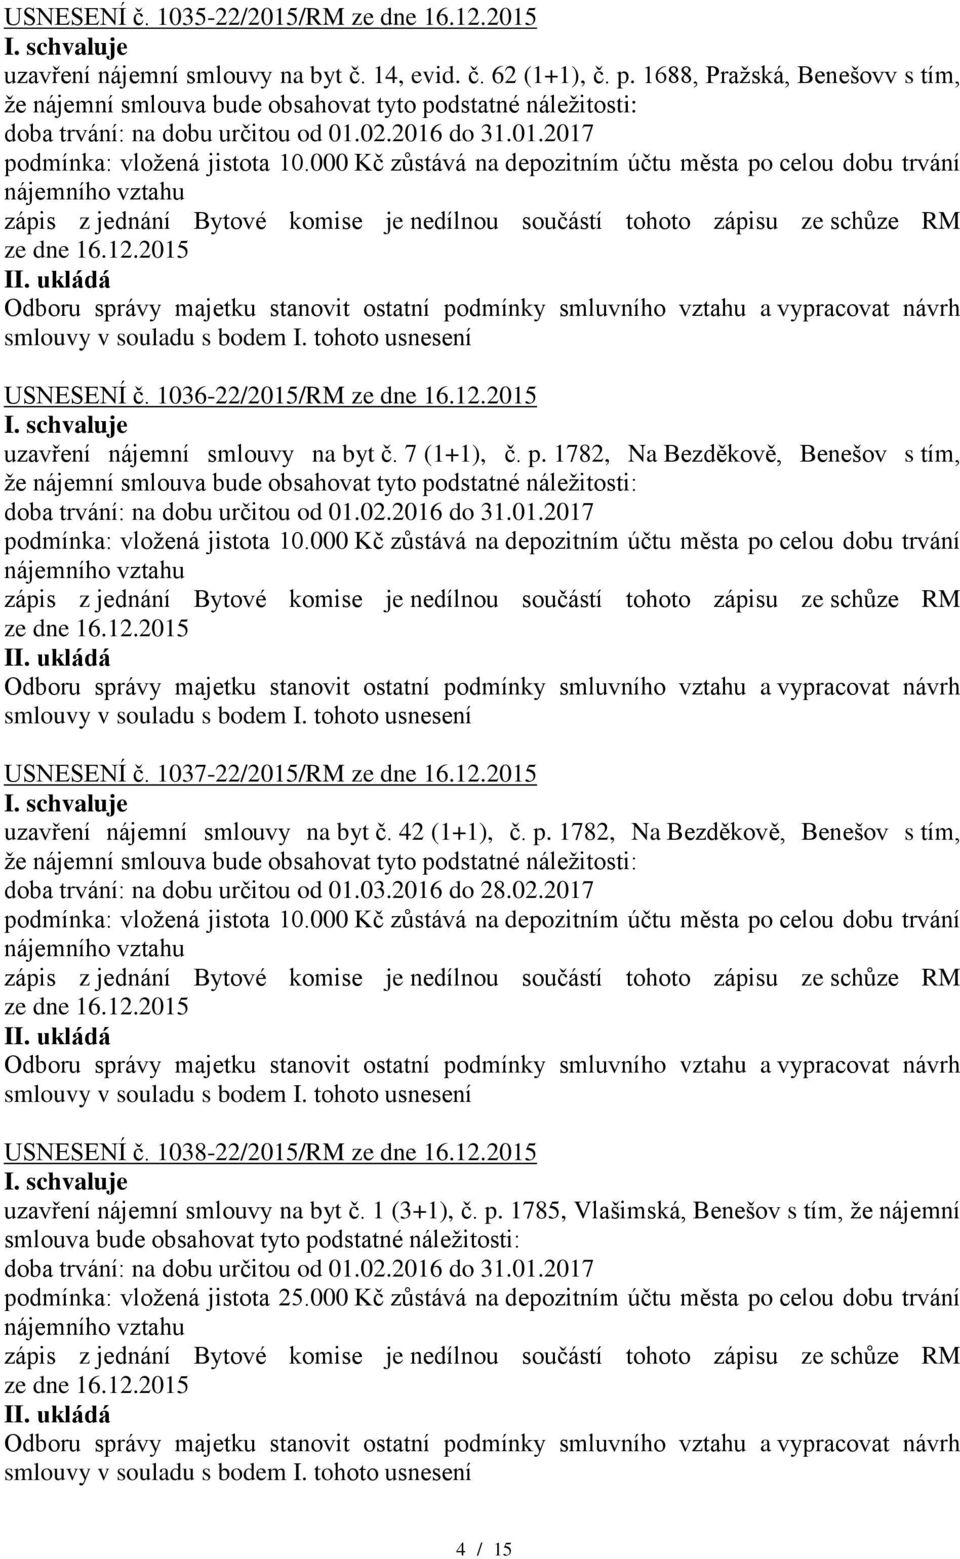 1037-22/2015/RM uzavření nájemní smlouvy na byt č. 42 (1+1), č. p. 1782, Na Bezděkově, Benešov s tím, doba trvání: na dobu určitou od 01.03.2016 do 28.02.